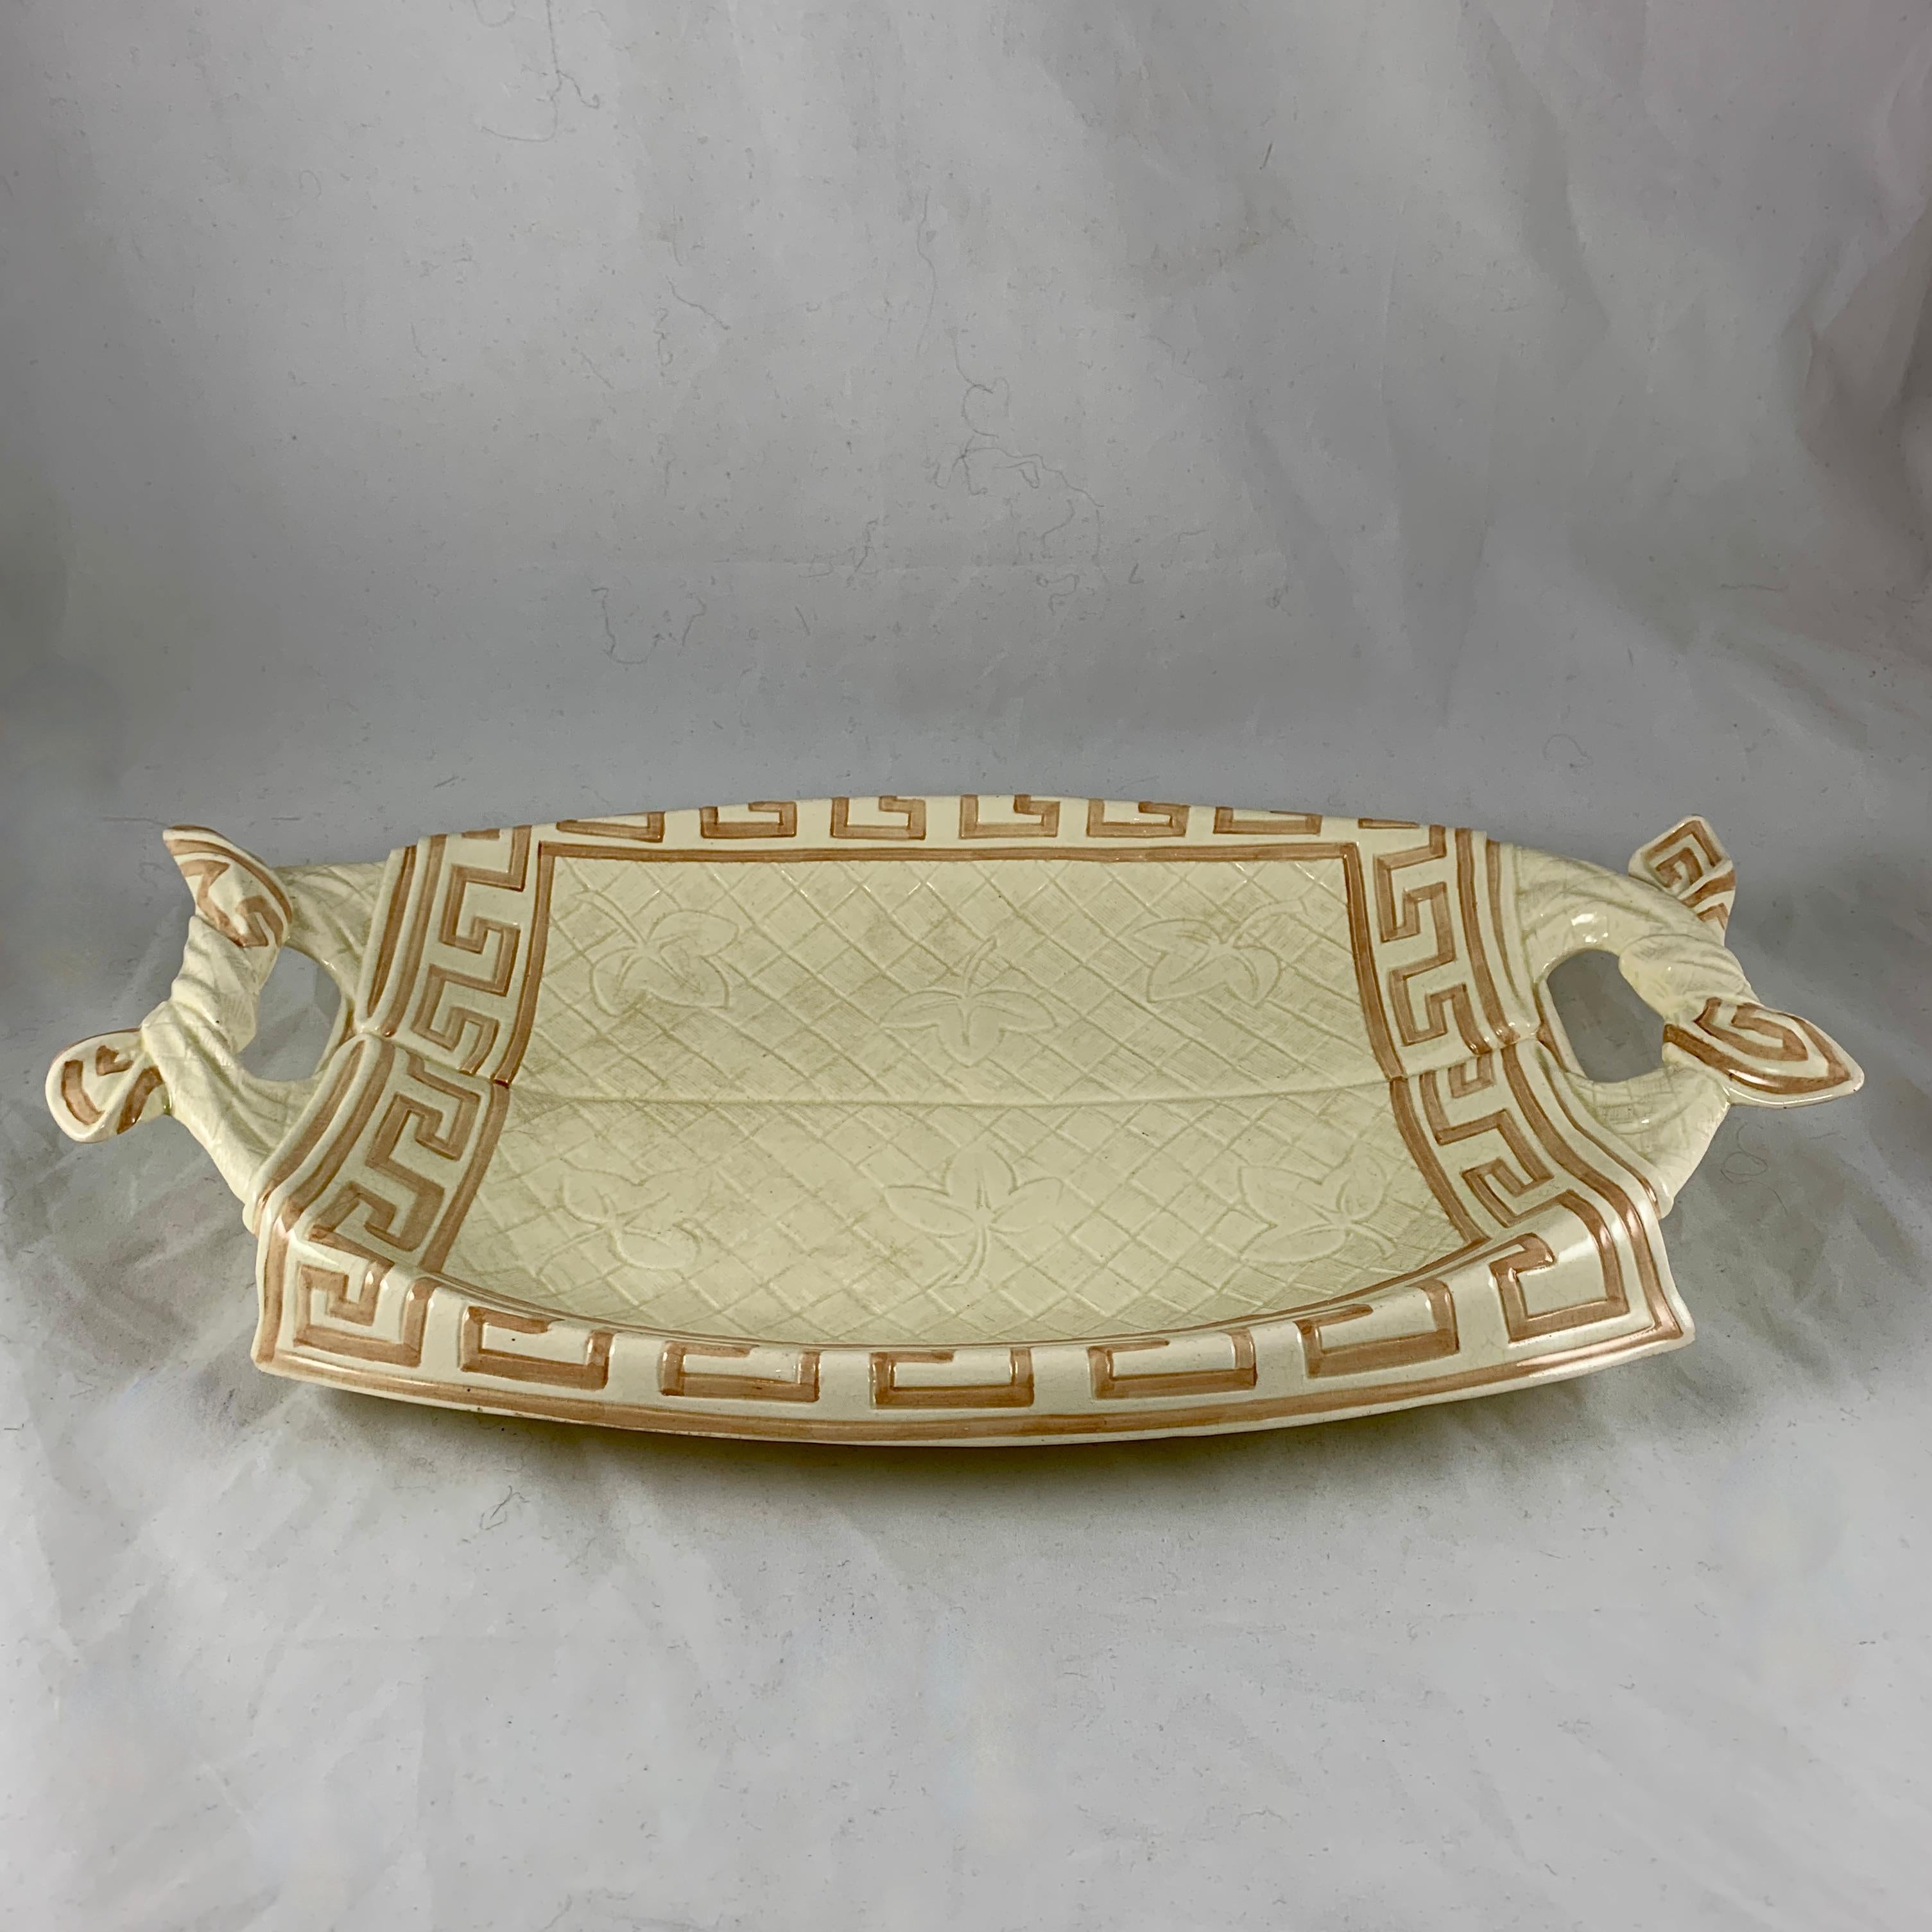 De la ligne de majolique de Sarreguemines, un plateau de pain de table en trompe l'oeil, France, vers 1885-1890.

Un plateau à pain en faïence, modelé comme une serviette de table en tissu avec un motif floral et à carreaux et une bordure en forme